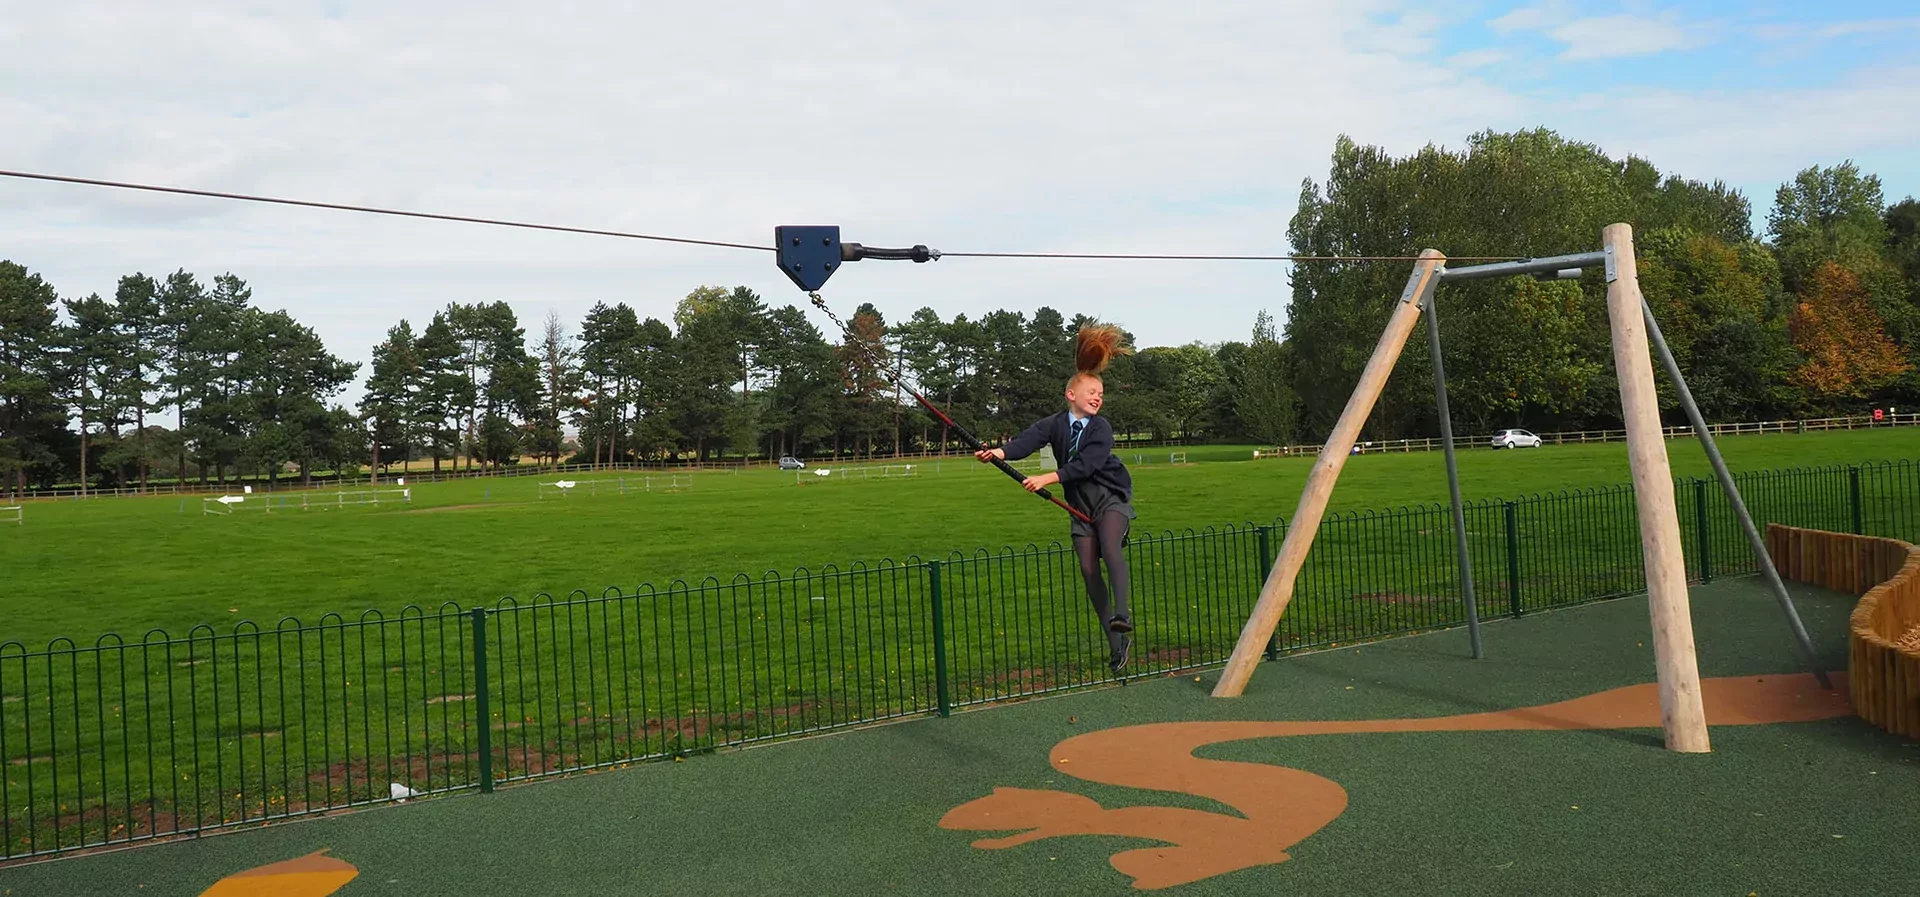 Mädchen hat Spass auf einer Spielplatz Seilbahn in einem öffentlichen Park in England